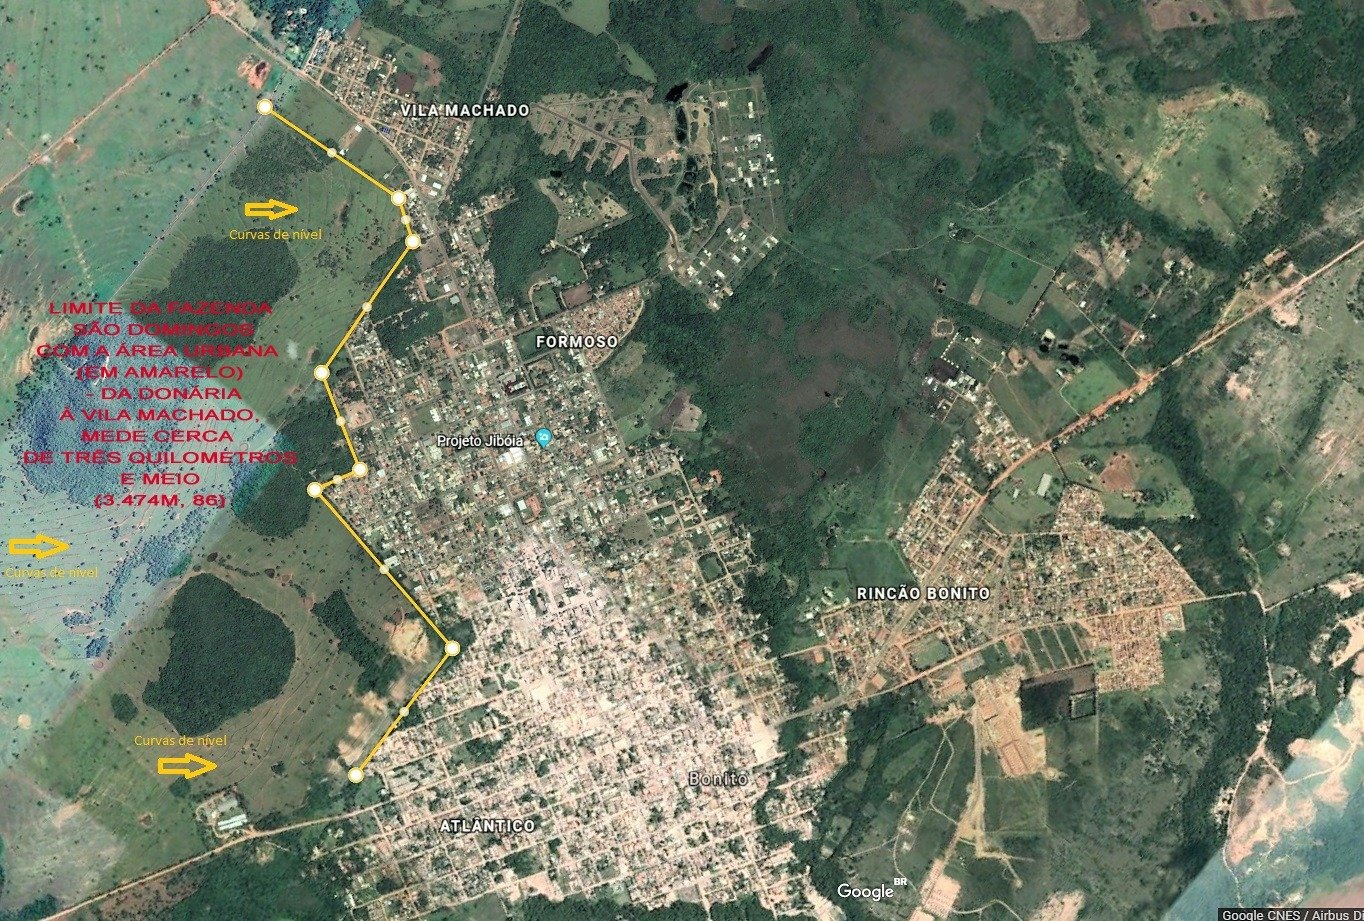 Divisa da Fazenda São Domingos com a área urbana vai das proximidades do Cemitério até a Vila Machado, totalizando mais de 3,5 Km. Ver mapa